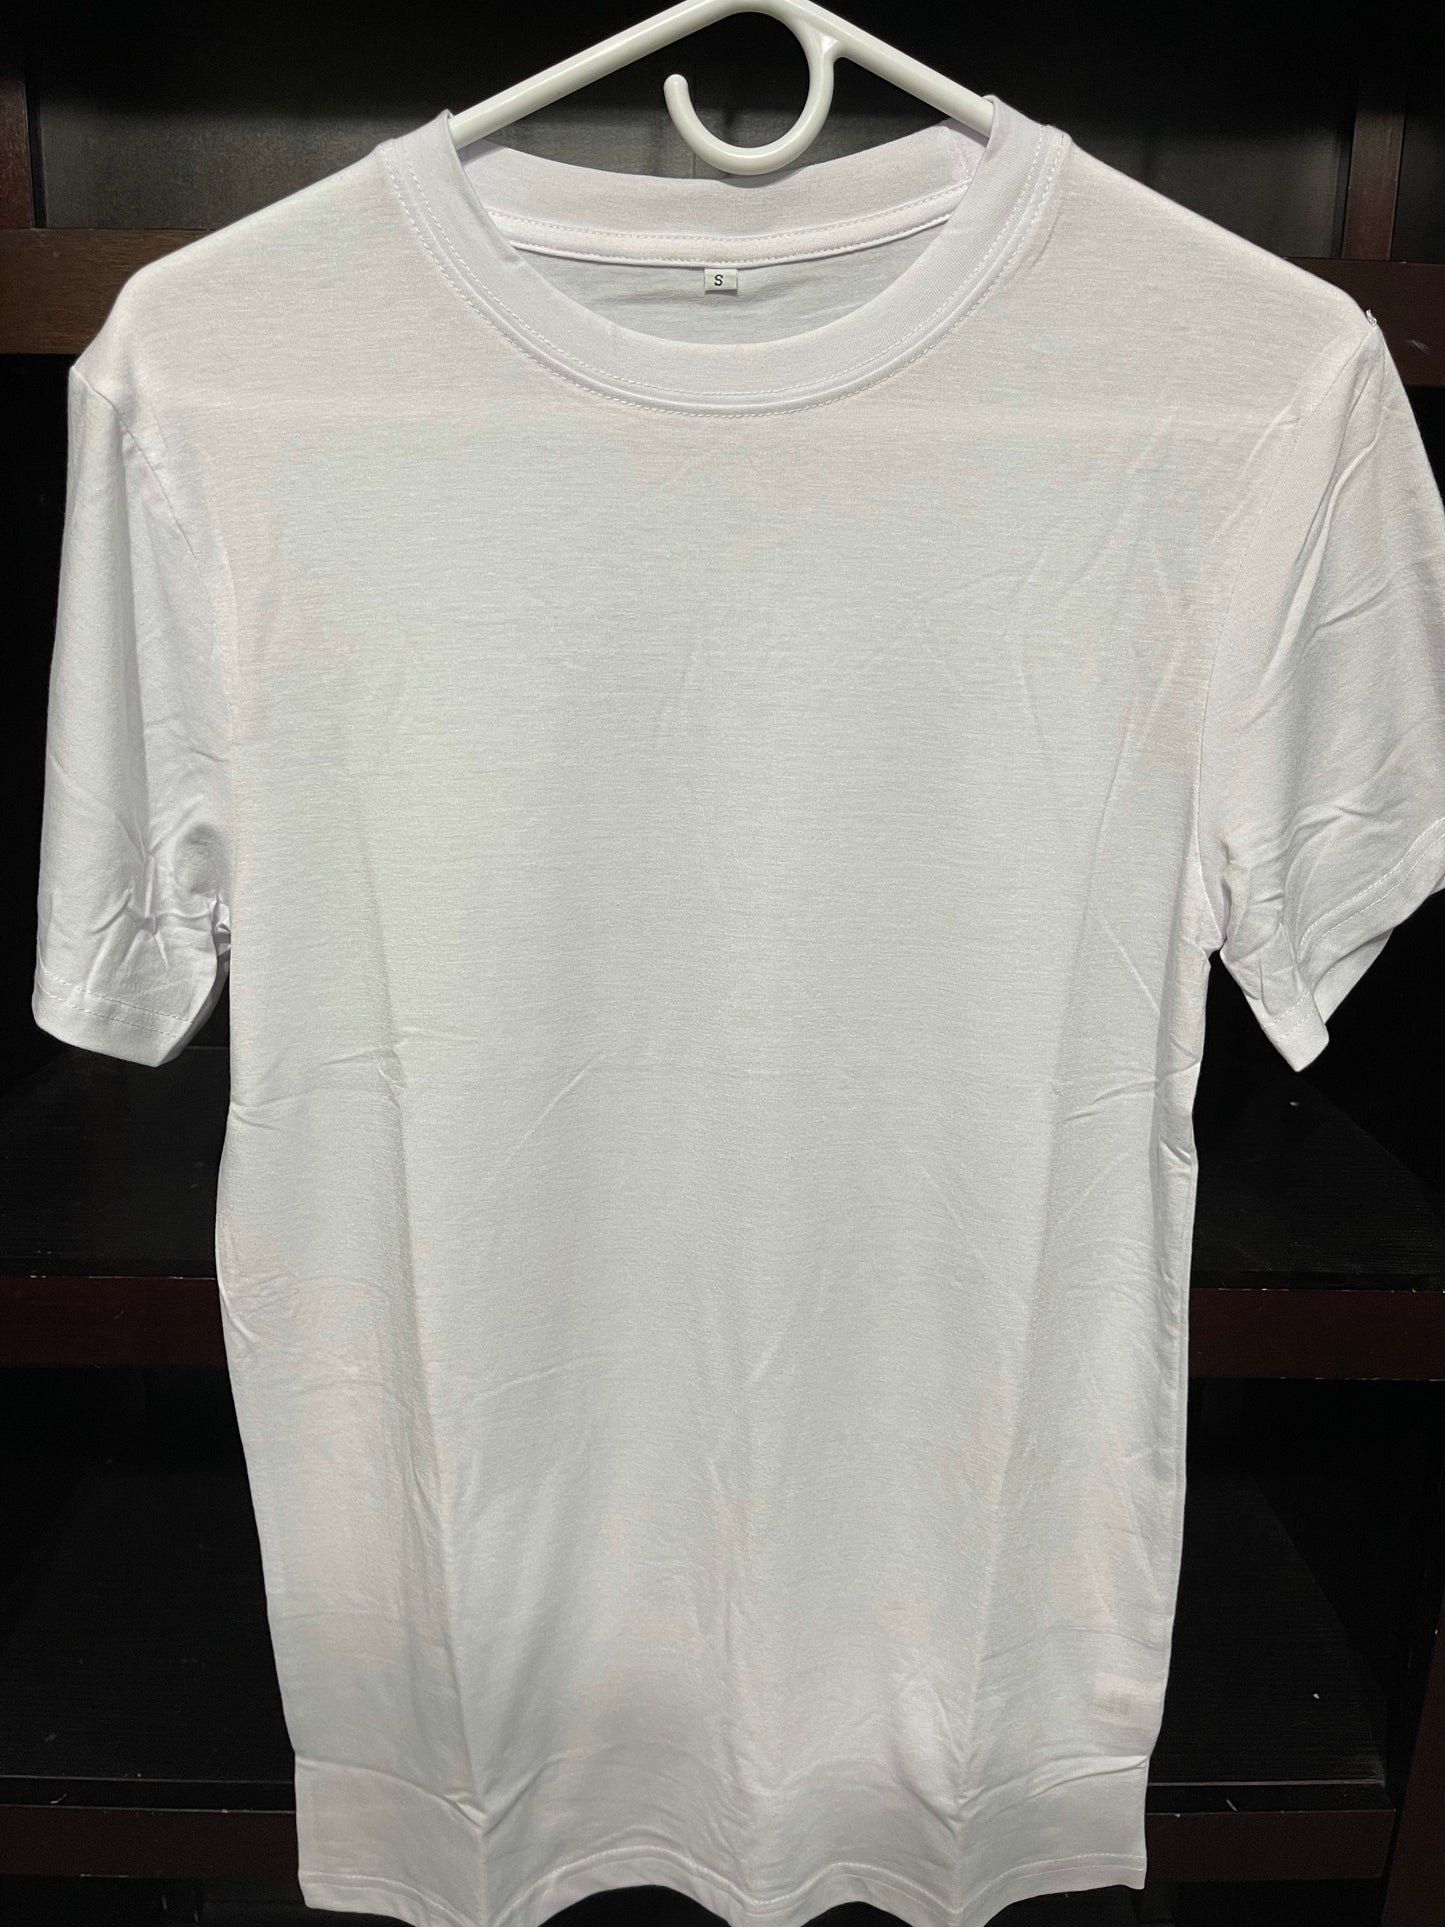 White T-Shirt – Stainless Steel Heaven LLC